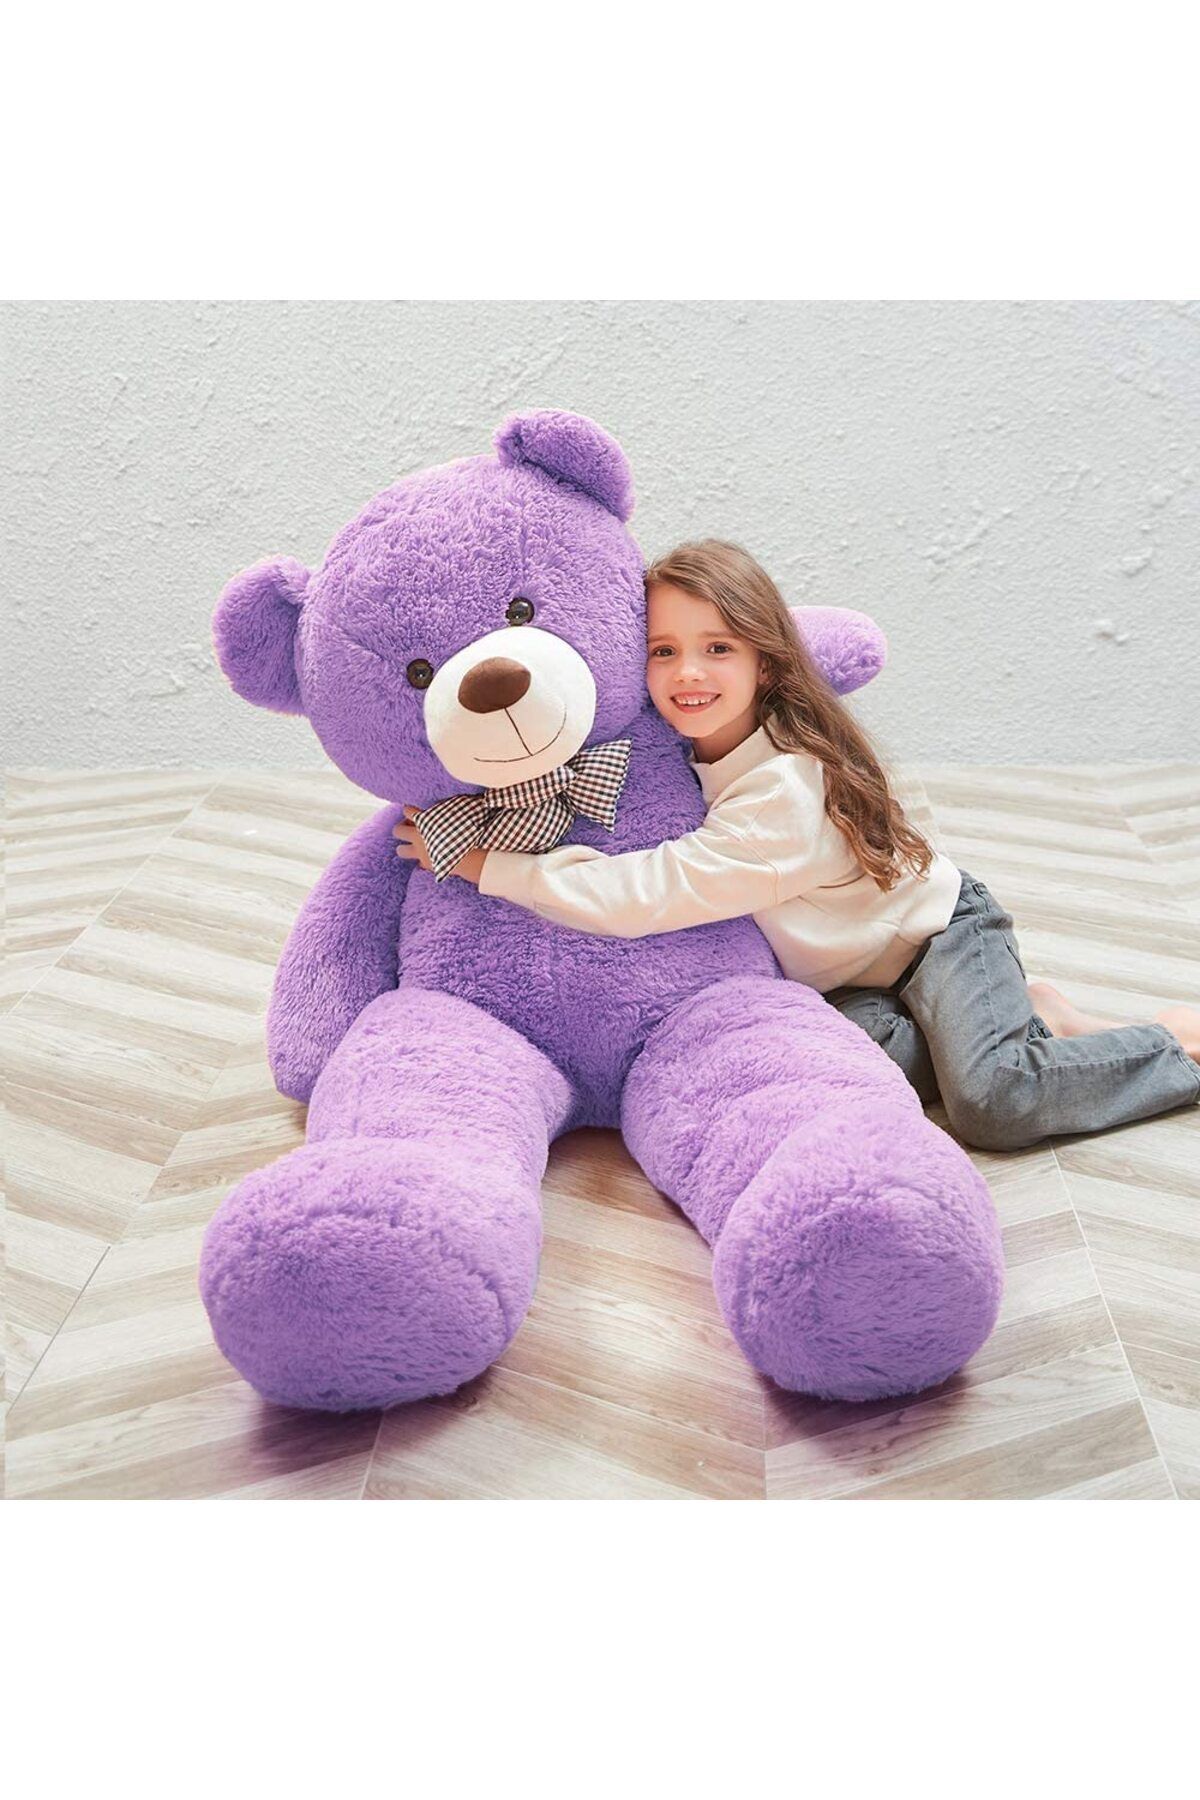 Sole هدیه ویژه برای عاشقان - خرس عروسکی مخملی 140 سانتی متری با پاپیون ...